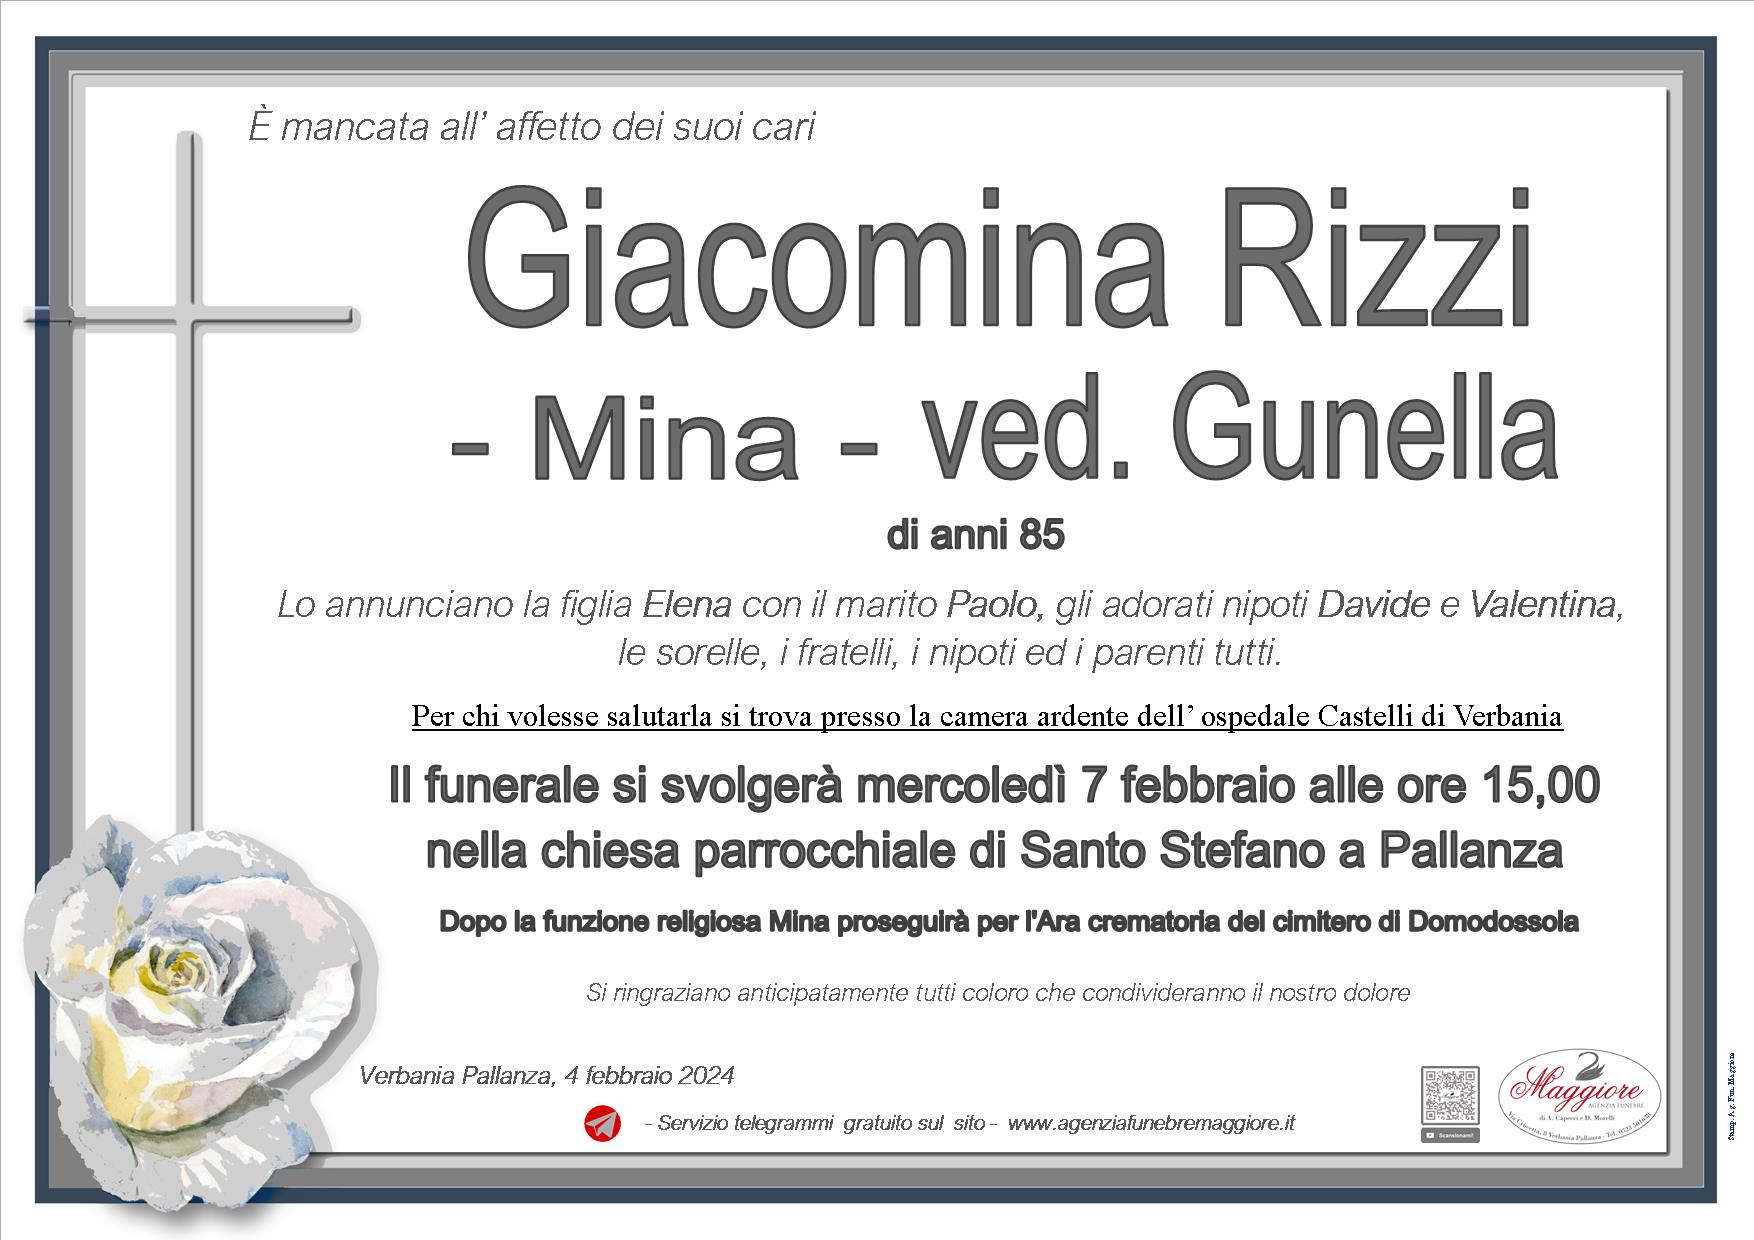 Giacomina (Mina) Rizzi ved. Gunella